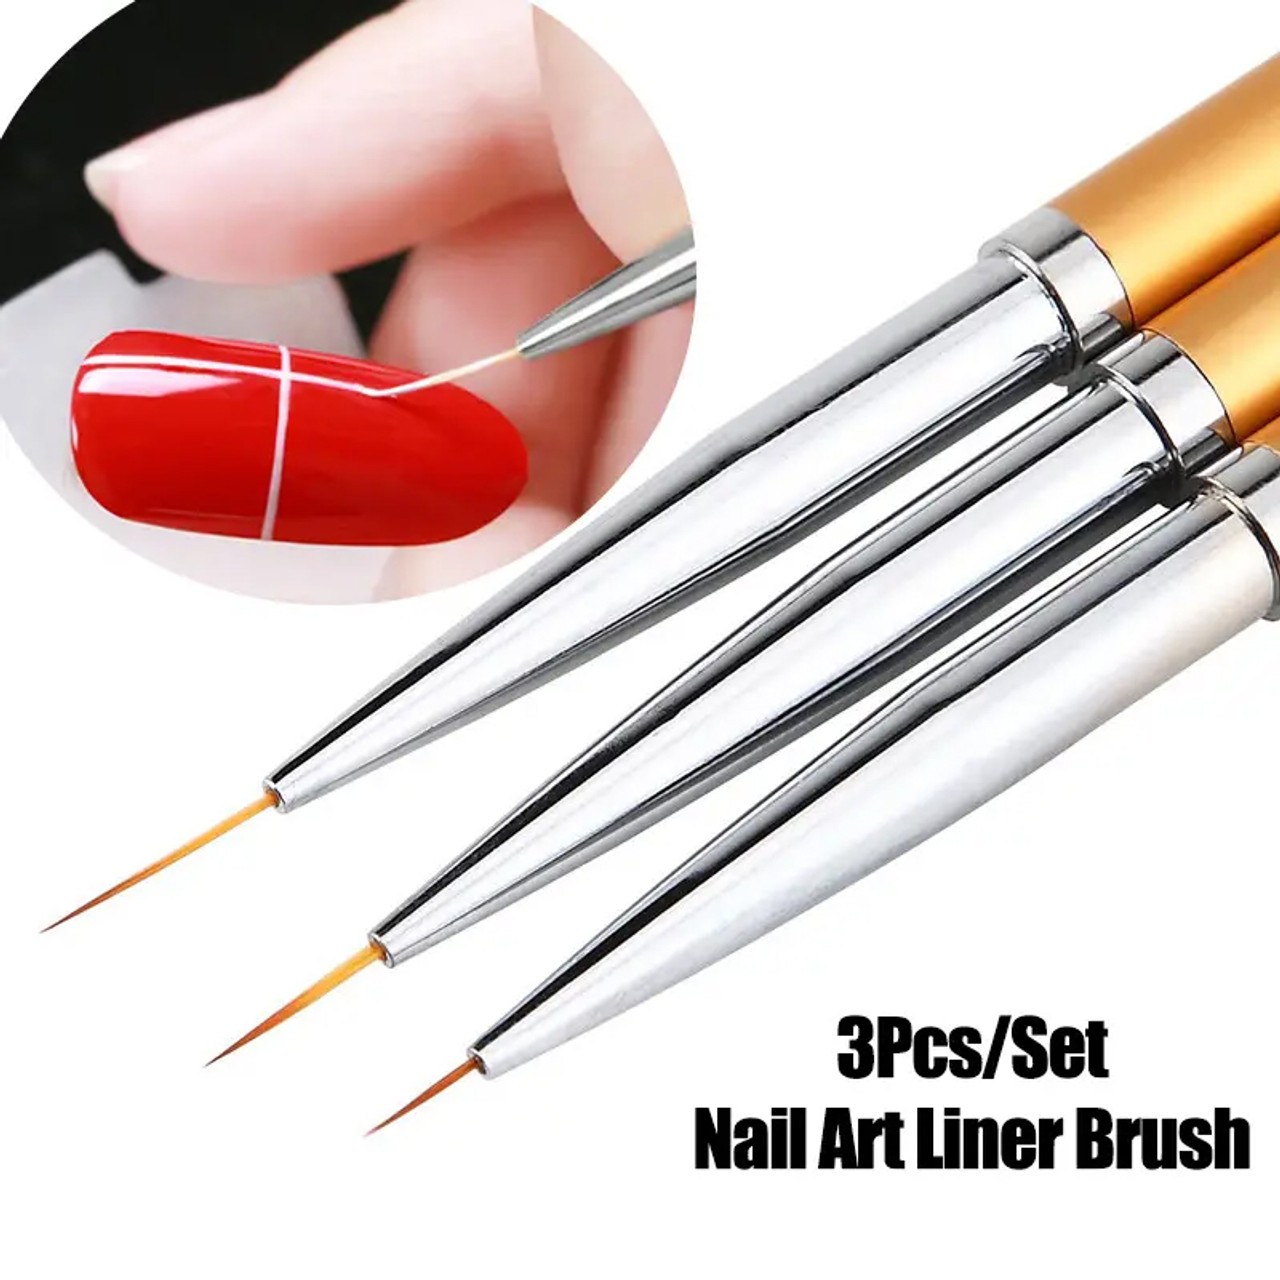 NAIL ART Painting Liner Brush 3Pcs - TDI, Inc